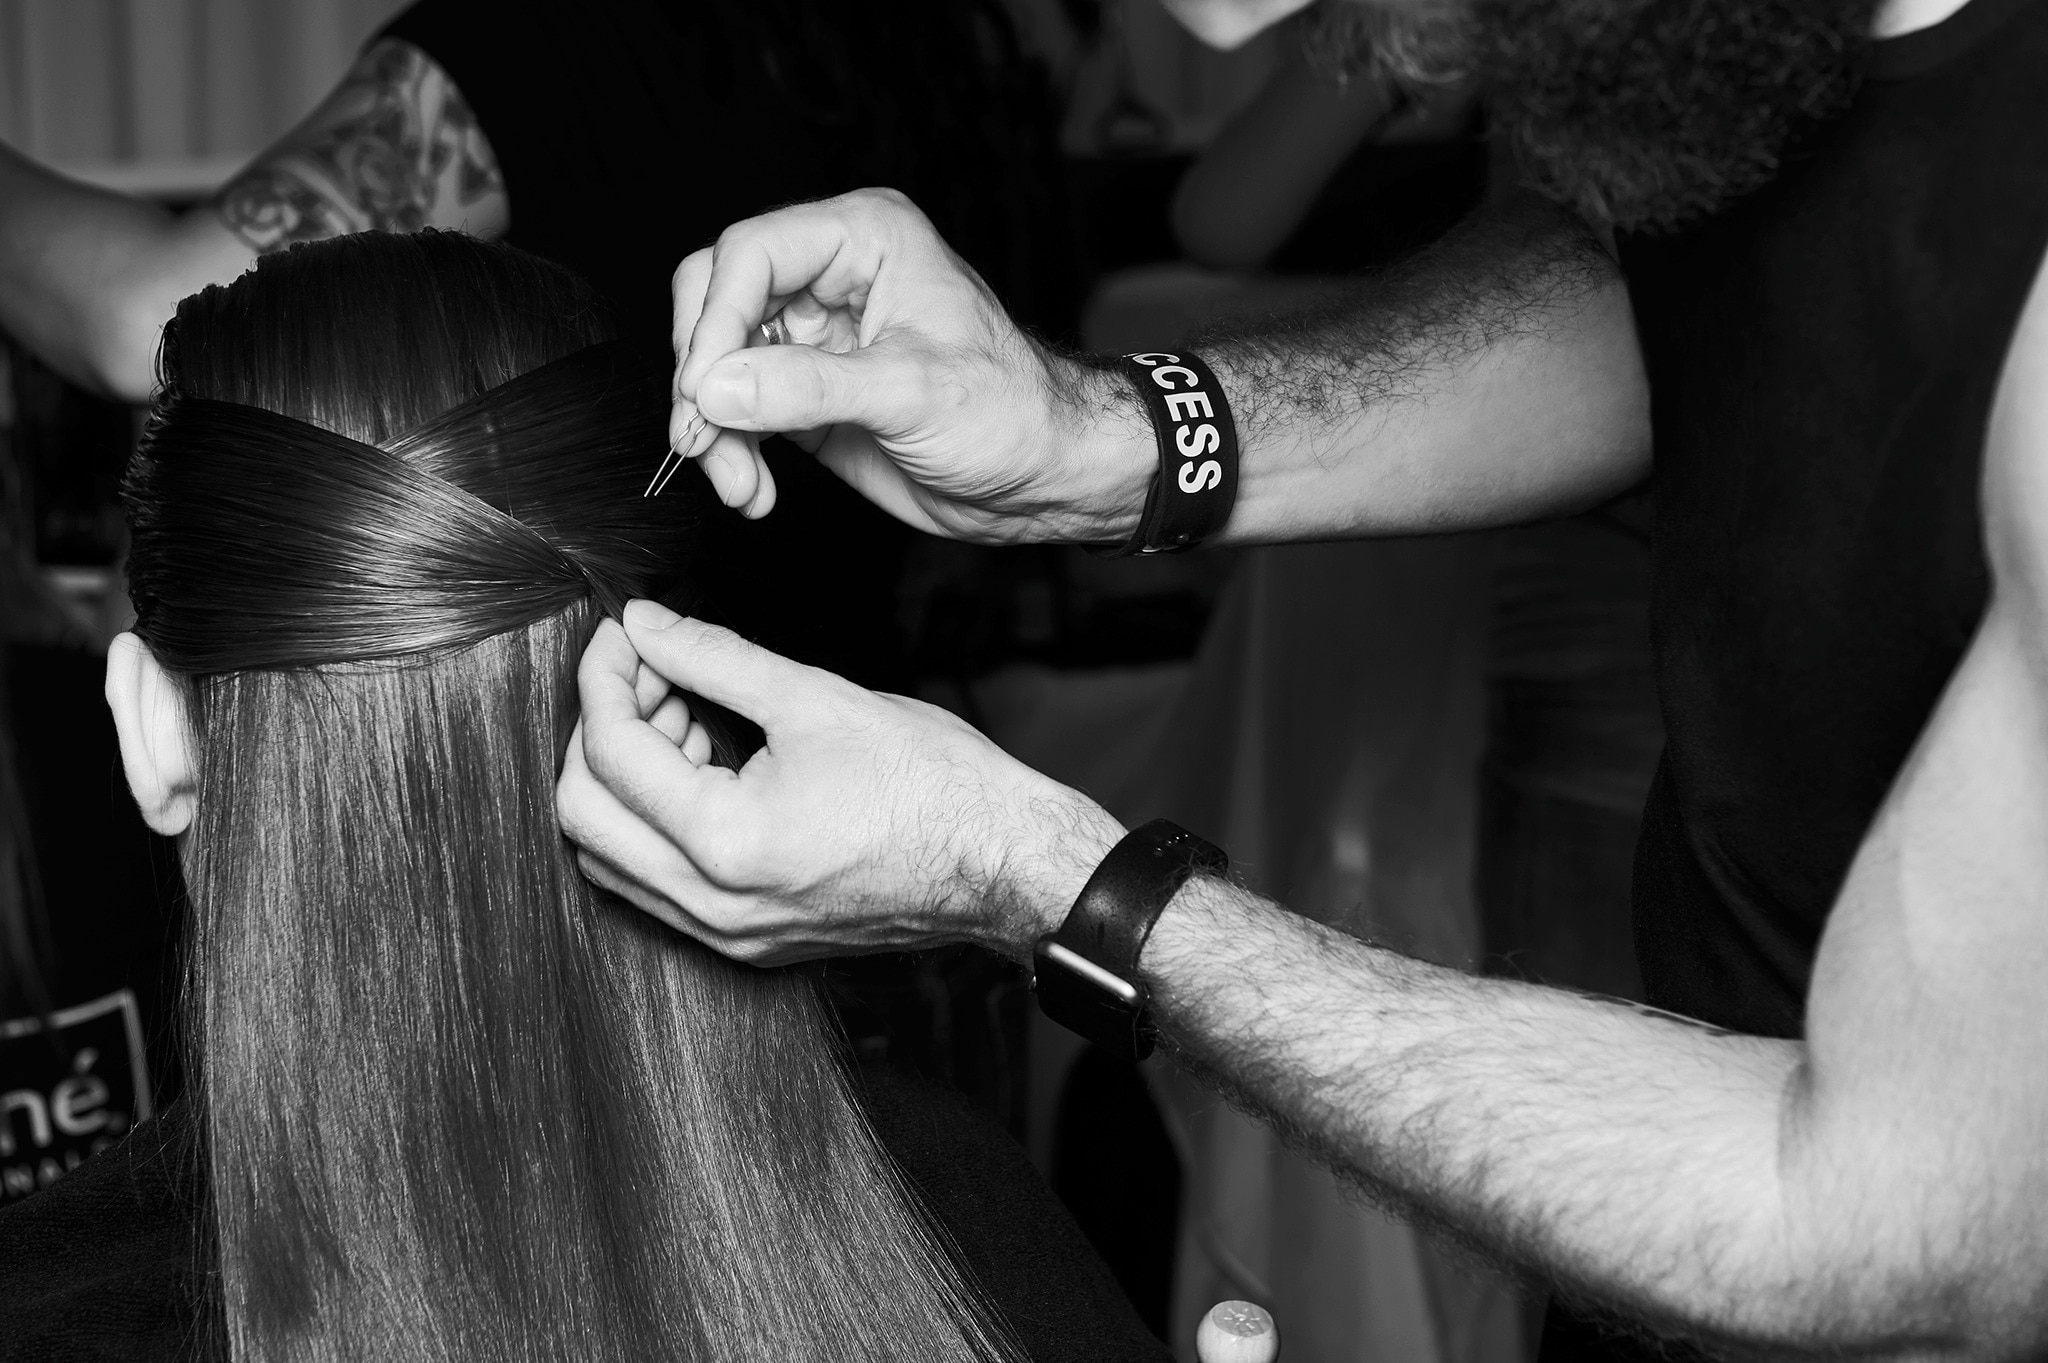  Egy stylist keze a modell haját tűzi össze egy hullámcsattal.